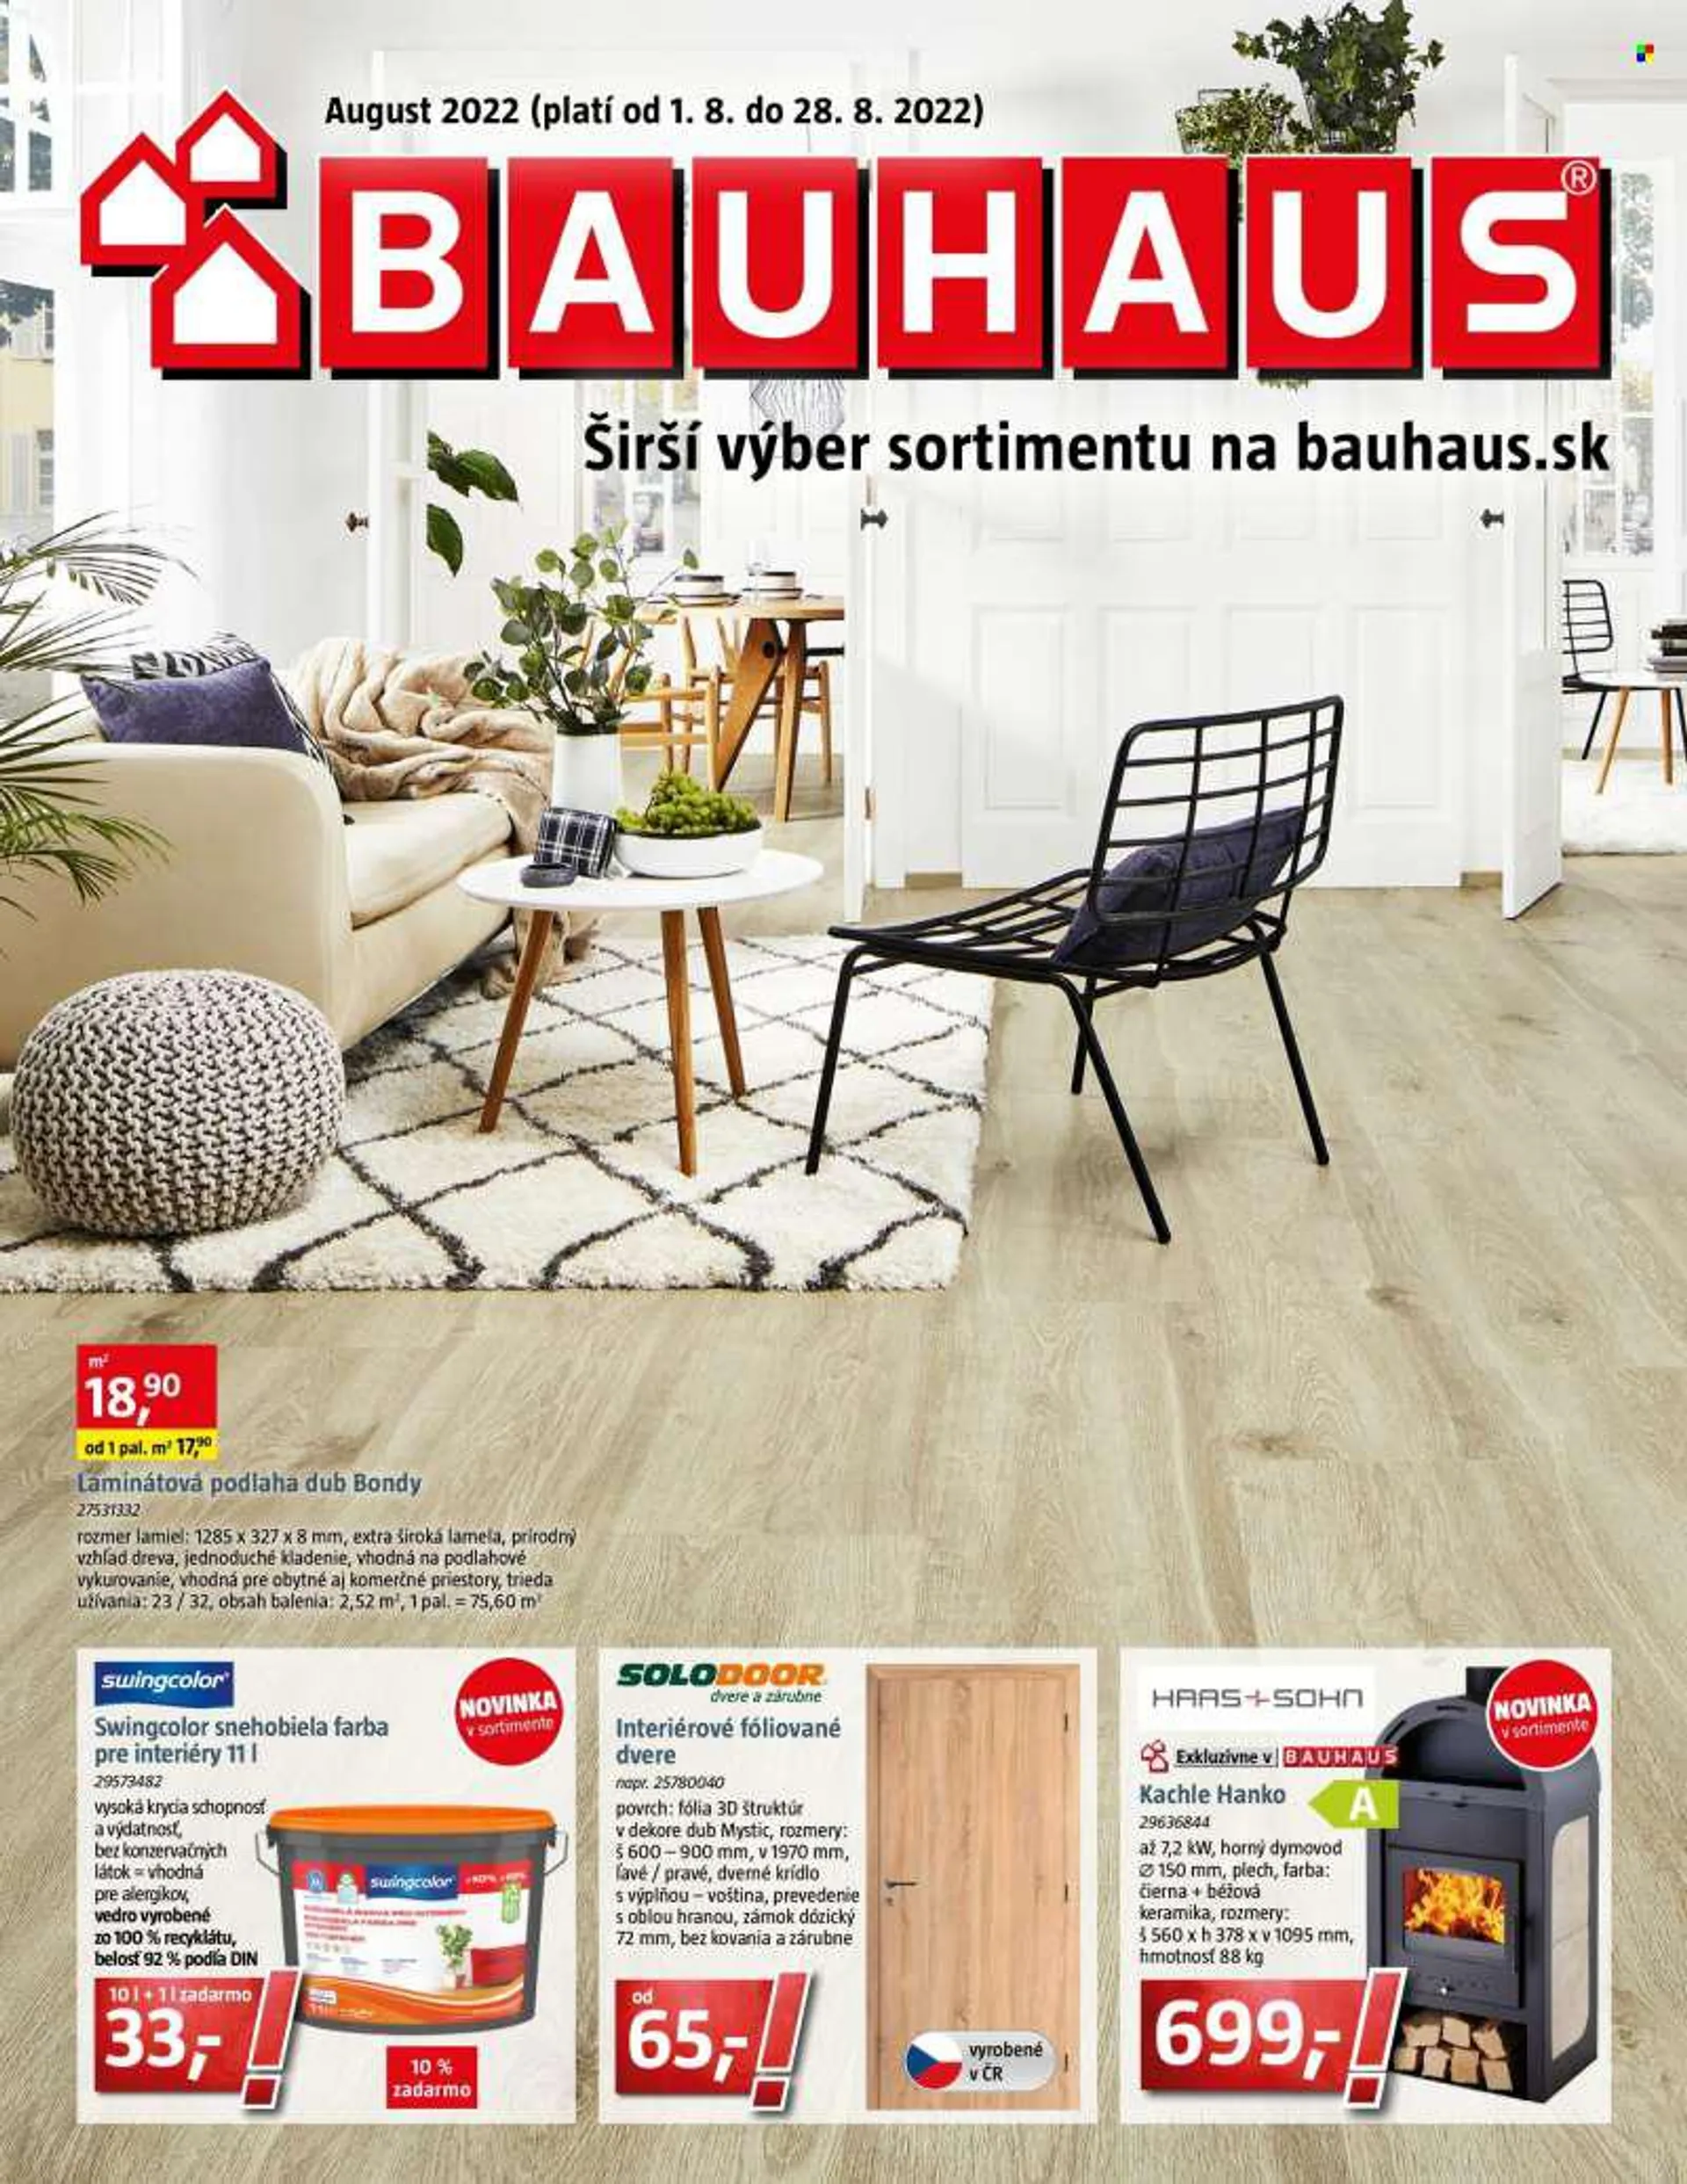 Leták Bauhaus - 1.8.2022 - 28.8.2022 - Produkty v akcii - zámok, vedro, kachle, podlaha, laminátová podlaha. Strana 1.